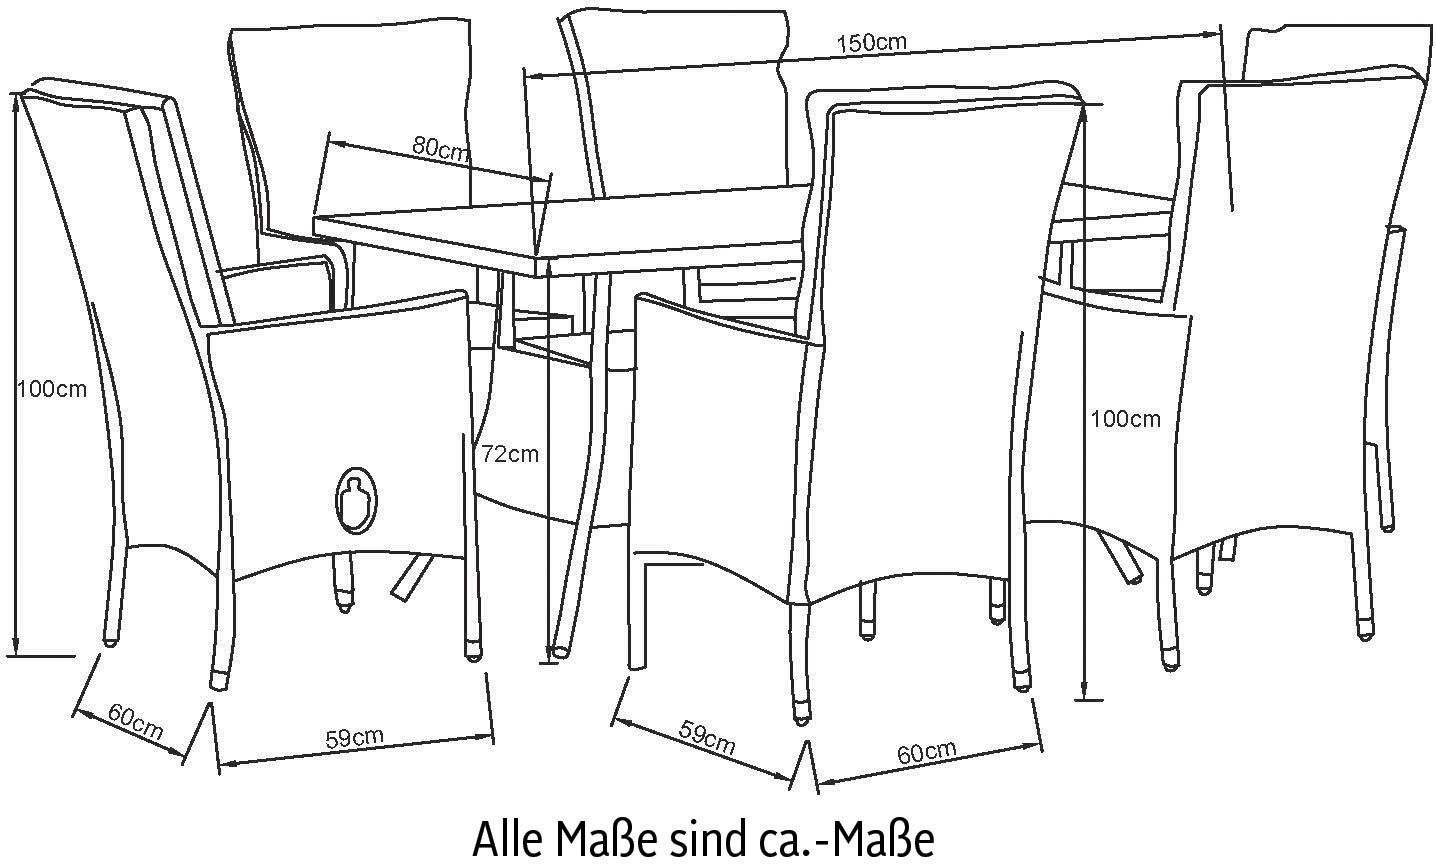 KONIFERA Garten-Essgruppe »Belluno«, (Set, 13 tlg., 6x Sessel, Tisch 150x80x 71,5 cm, Polyrattan, inkl. Auflagen), 2 der 6 Sessel stufenlos verstellbar, Stauraum unter dem Tisch, Grau